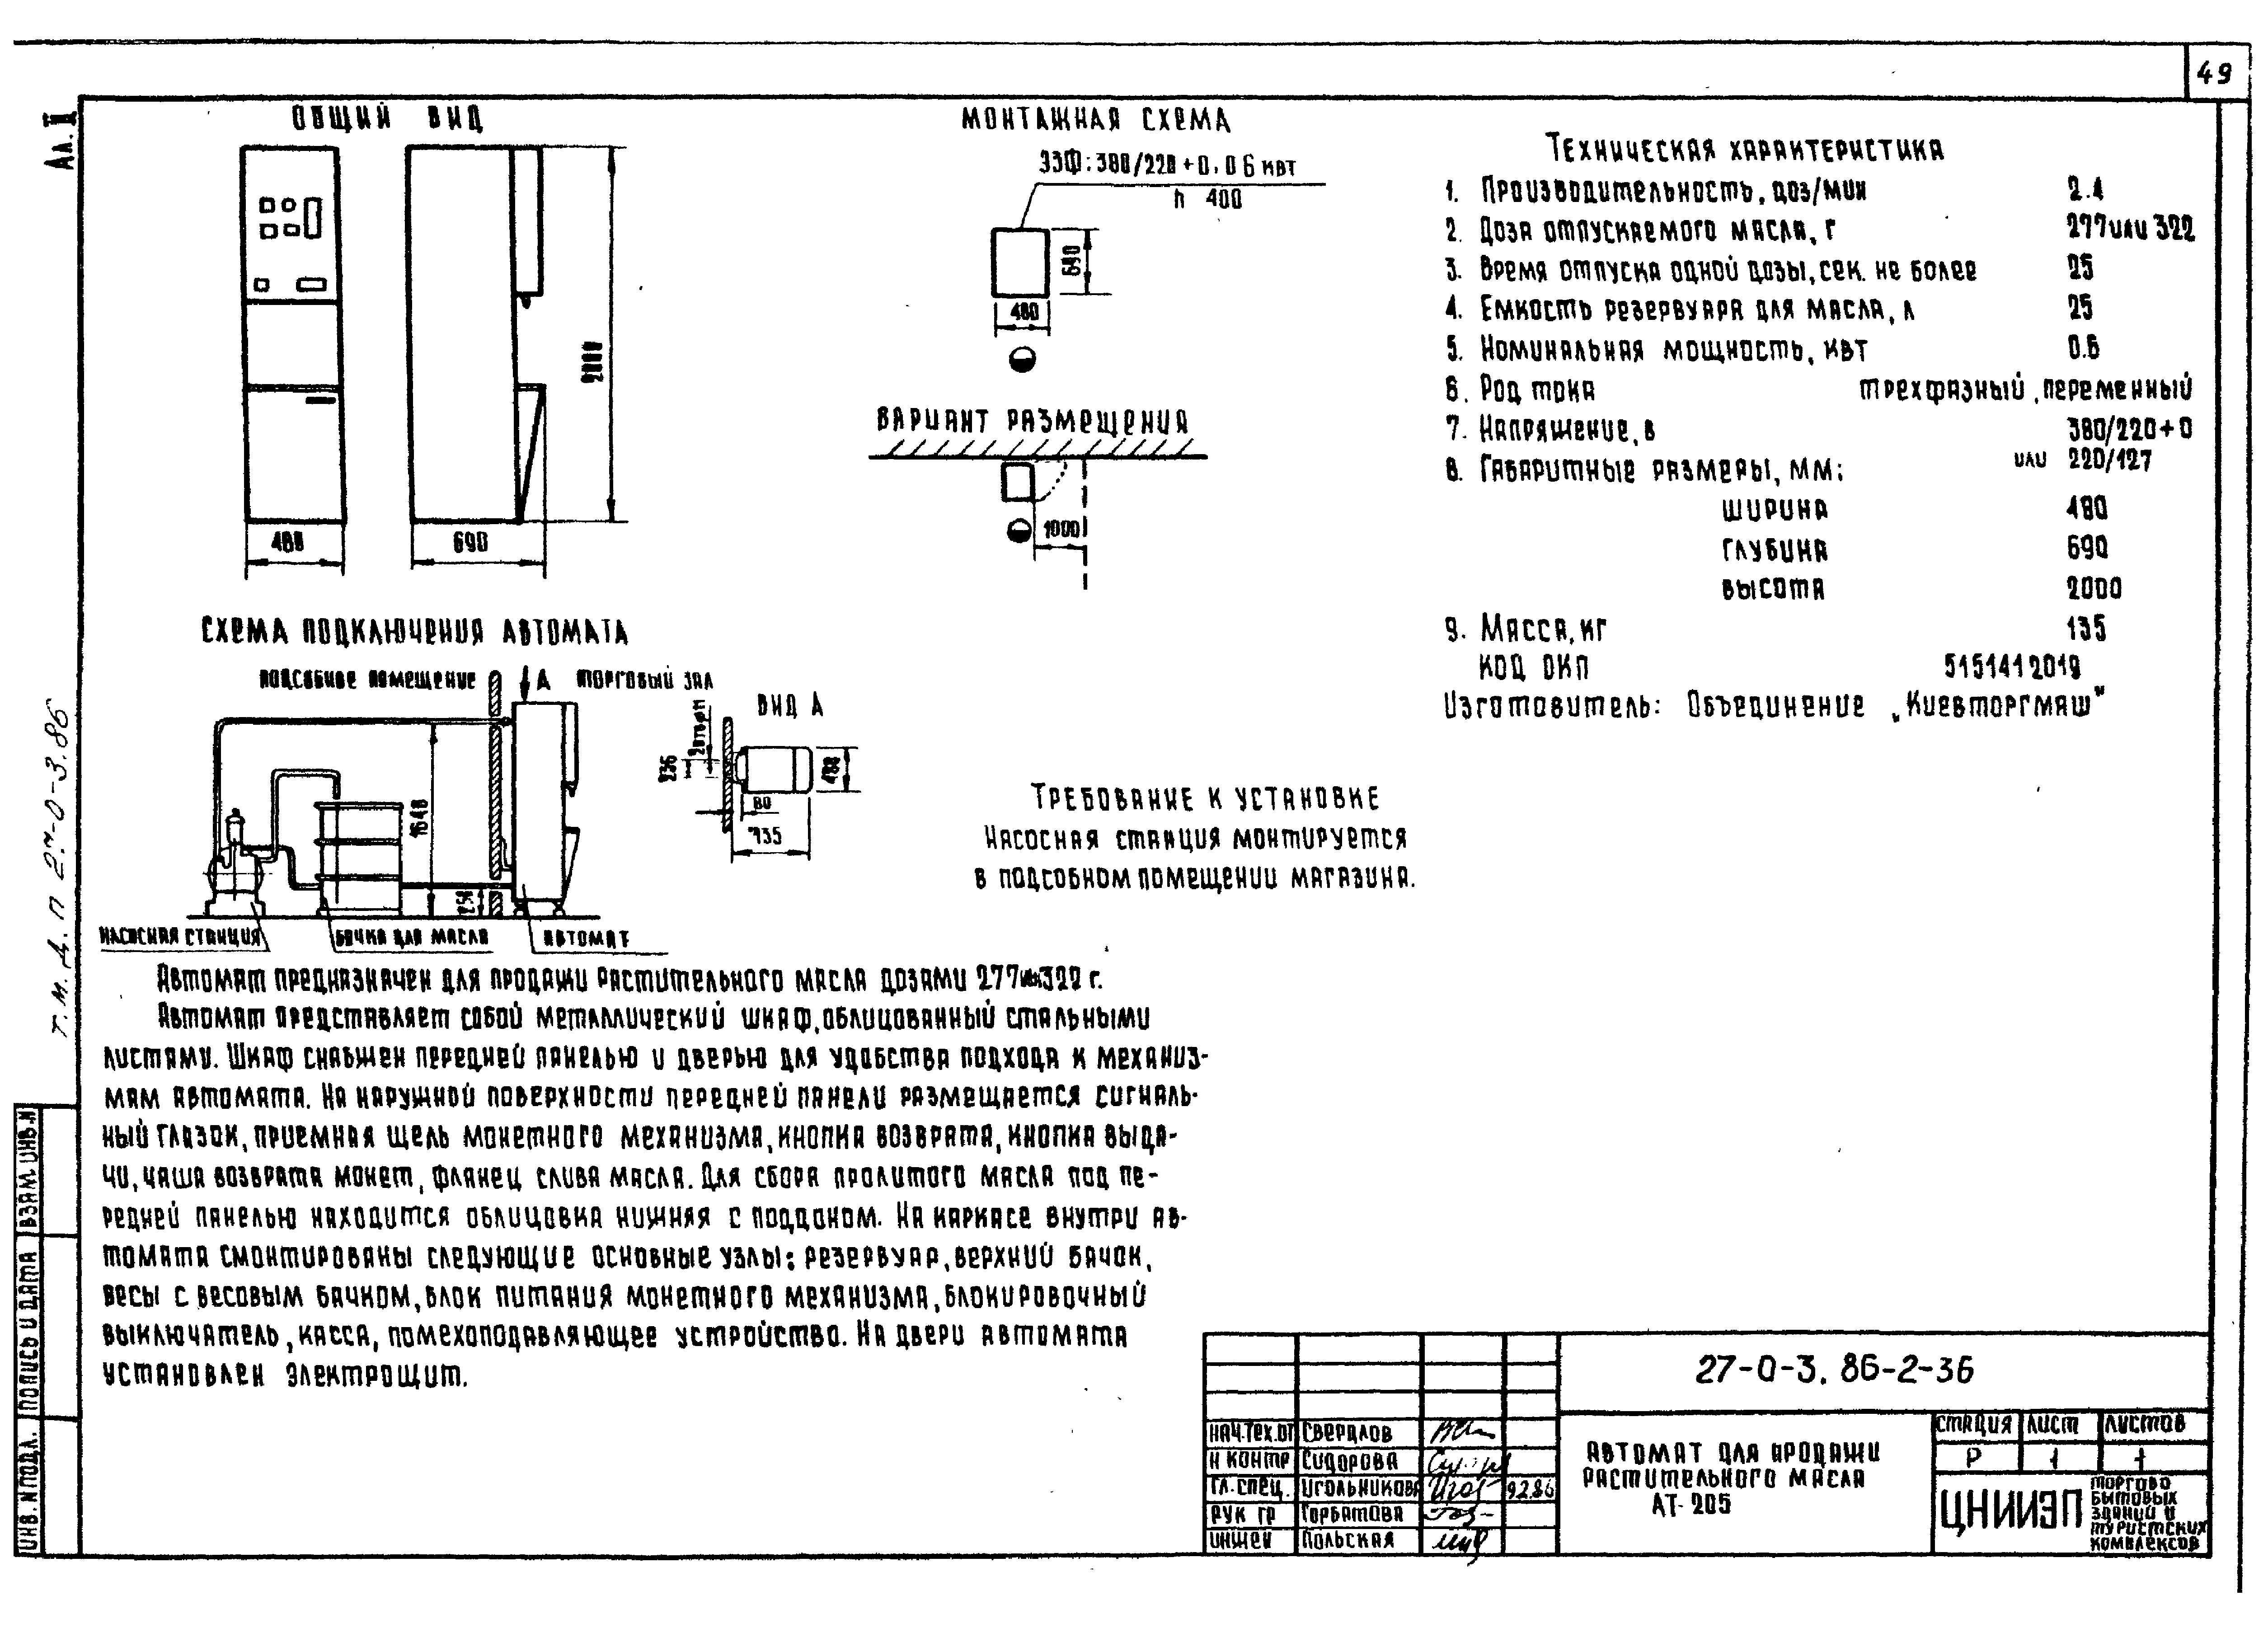 Типовые материалы для проектирования 27-0-3.86